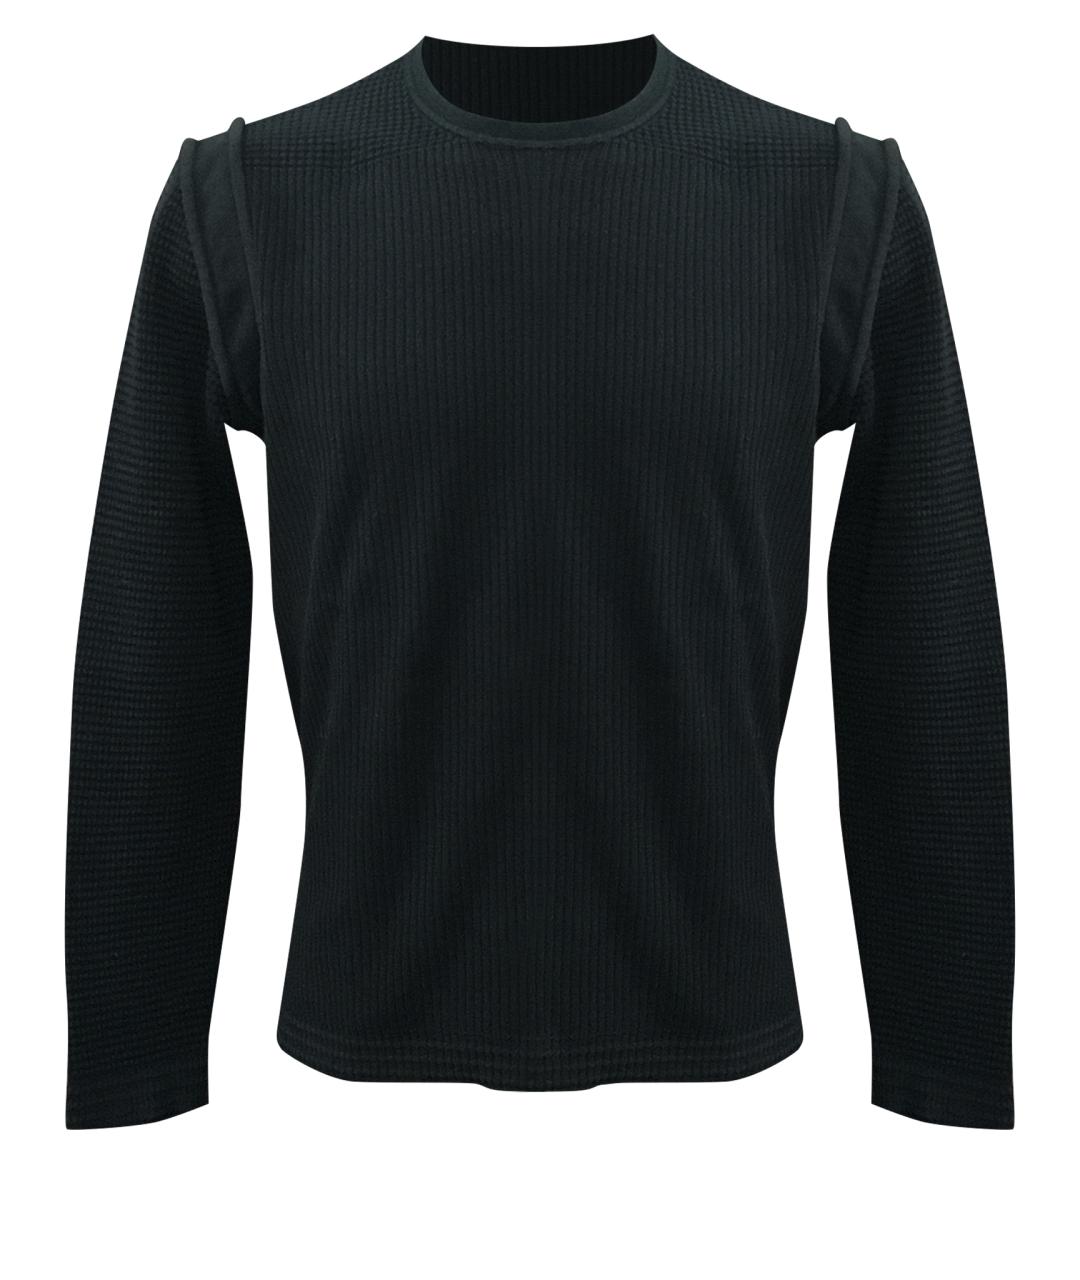 BILANCIONI Черный хлопковый джемпер / свитер, фото 1